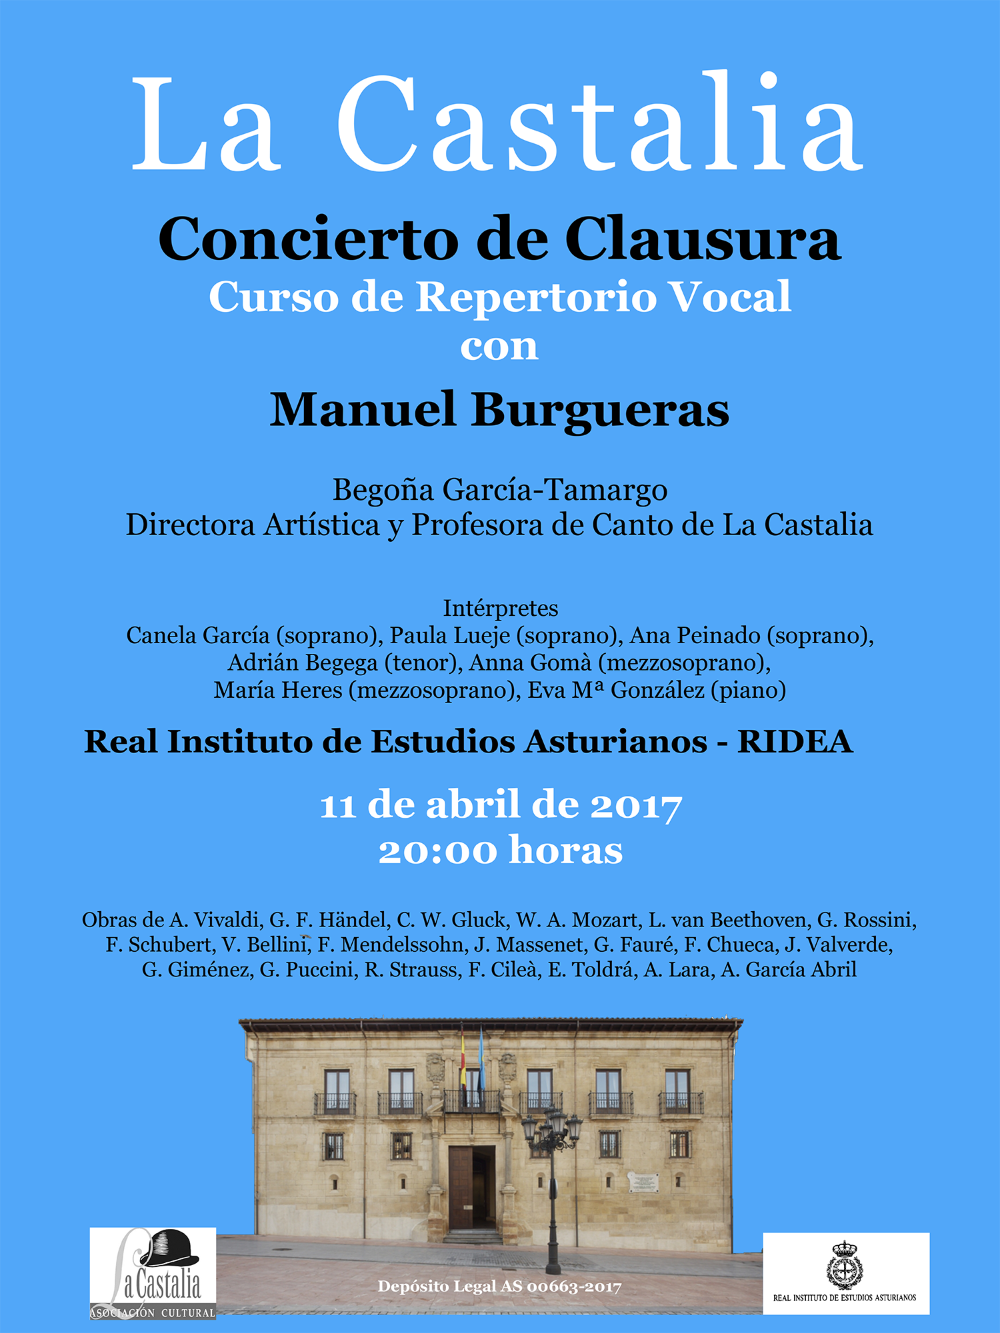 Imagen - Concierto de clausura La Castalia: Curso de Repertorio Vocal con Manuel Burgueras